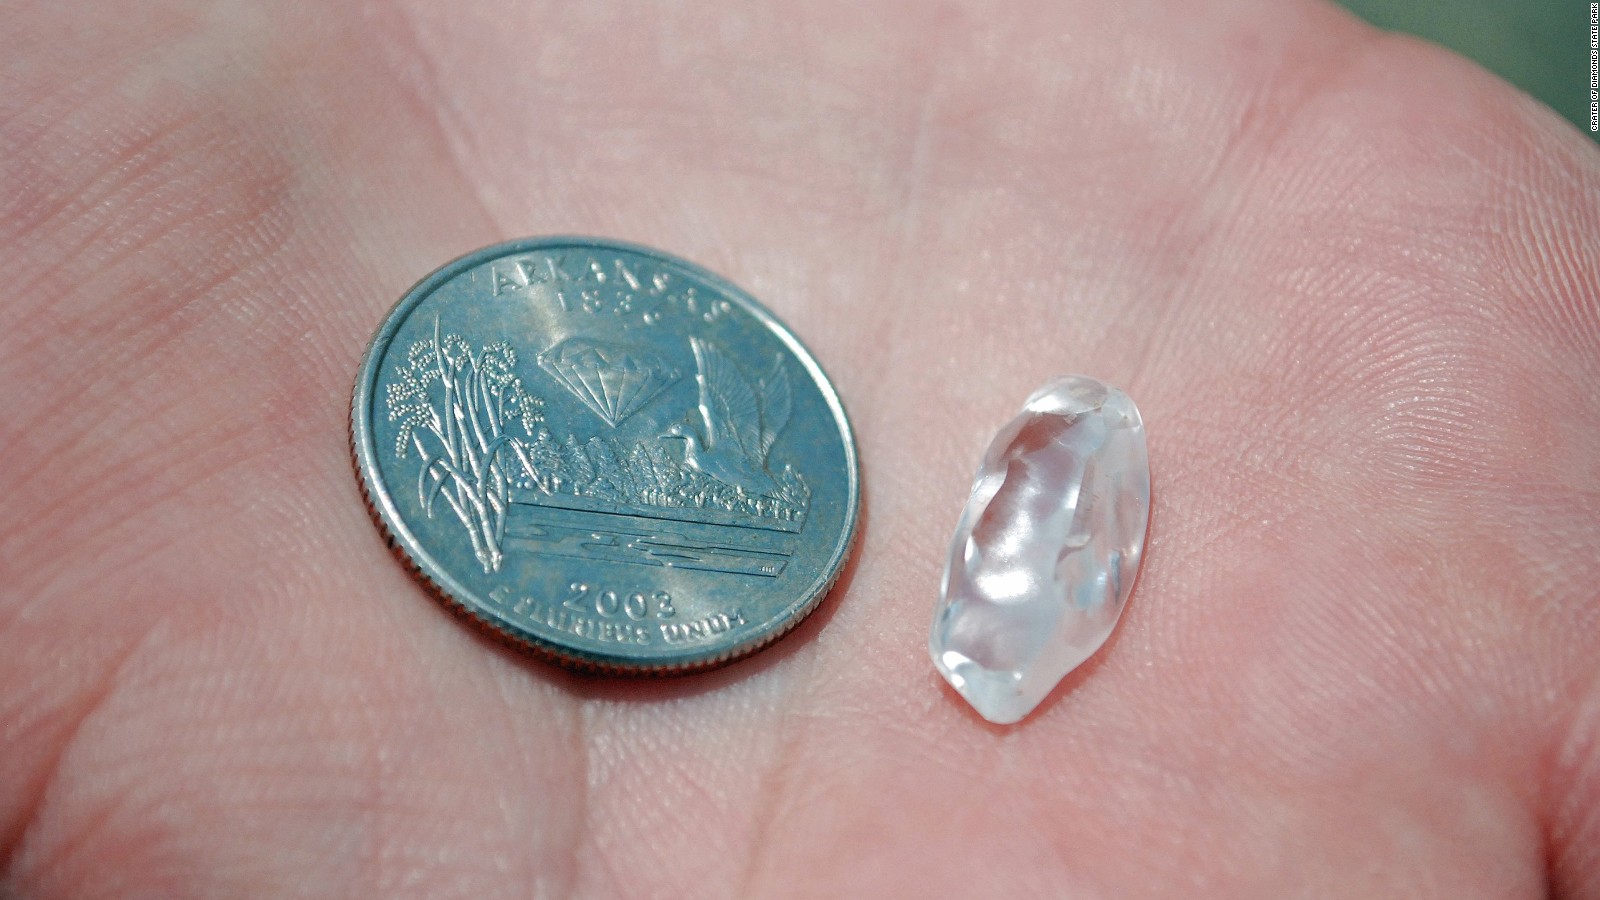 Park visitor finds 8.52carat diamond in Arkansas CNN